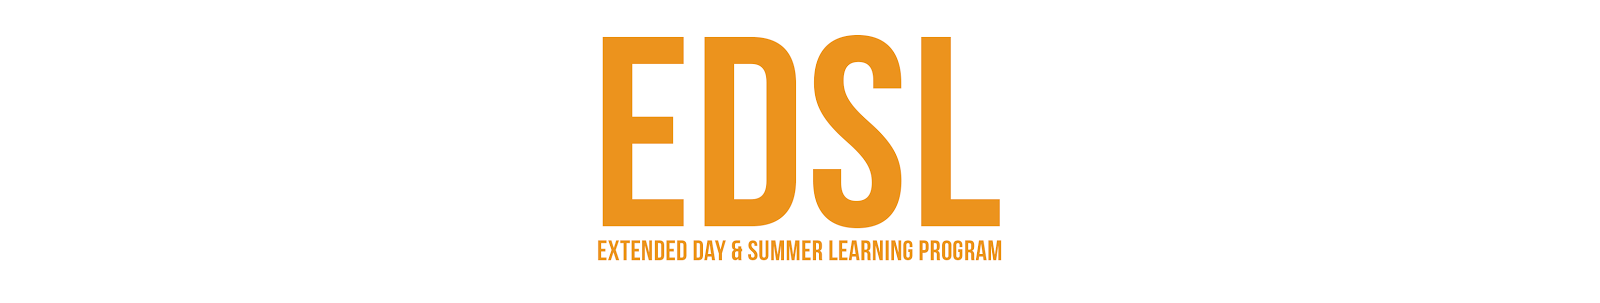 EDSL: Extended Day & Summer Learning Program